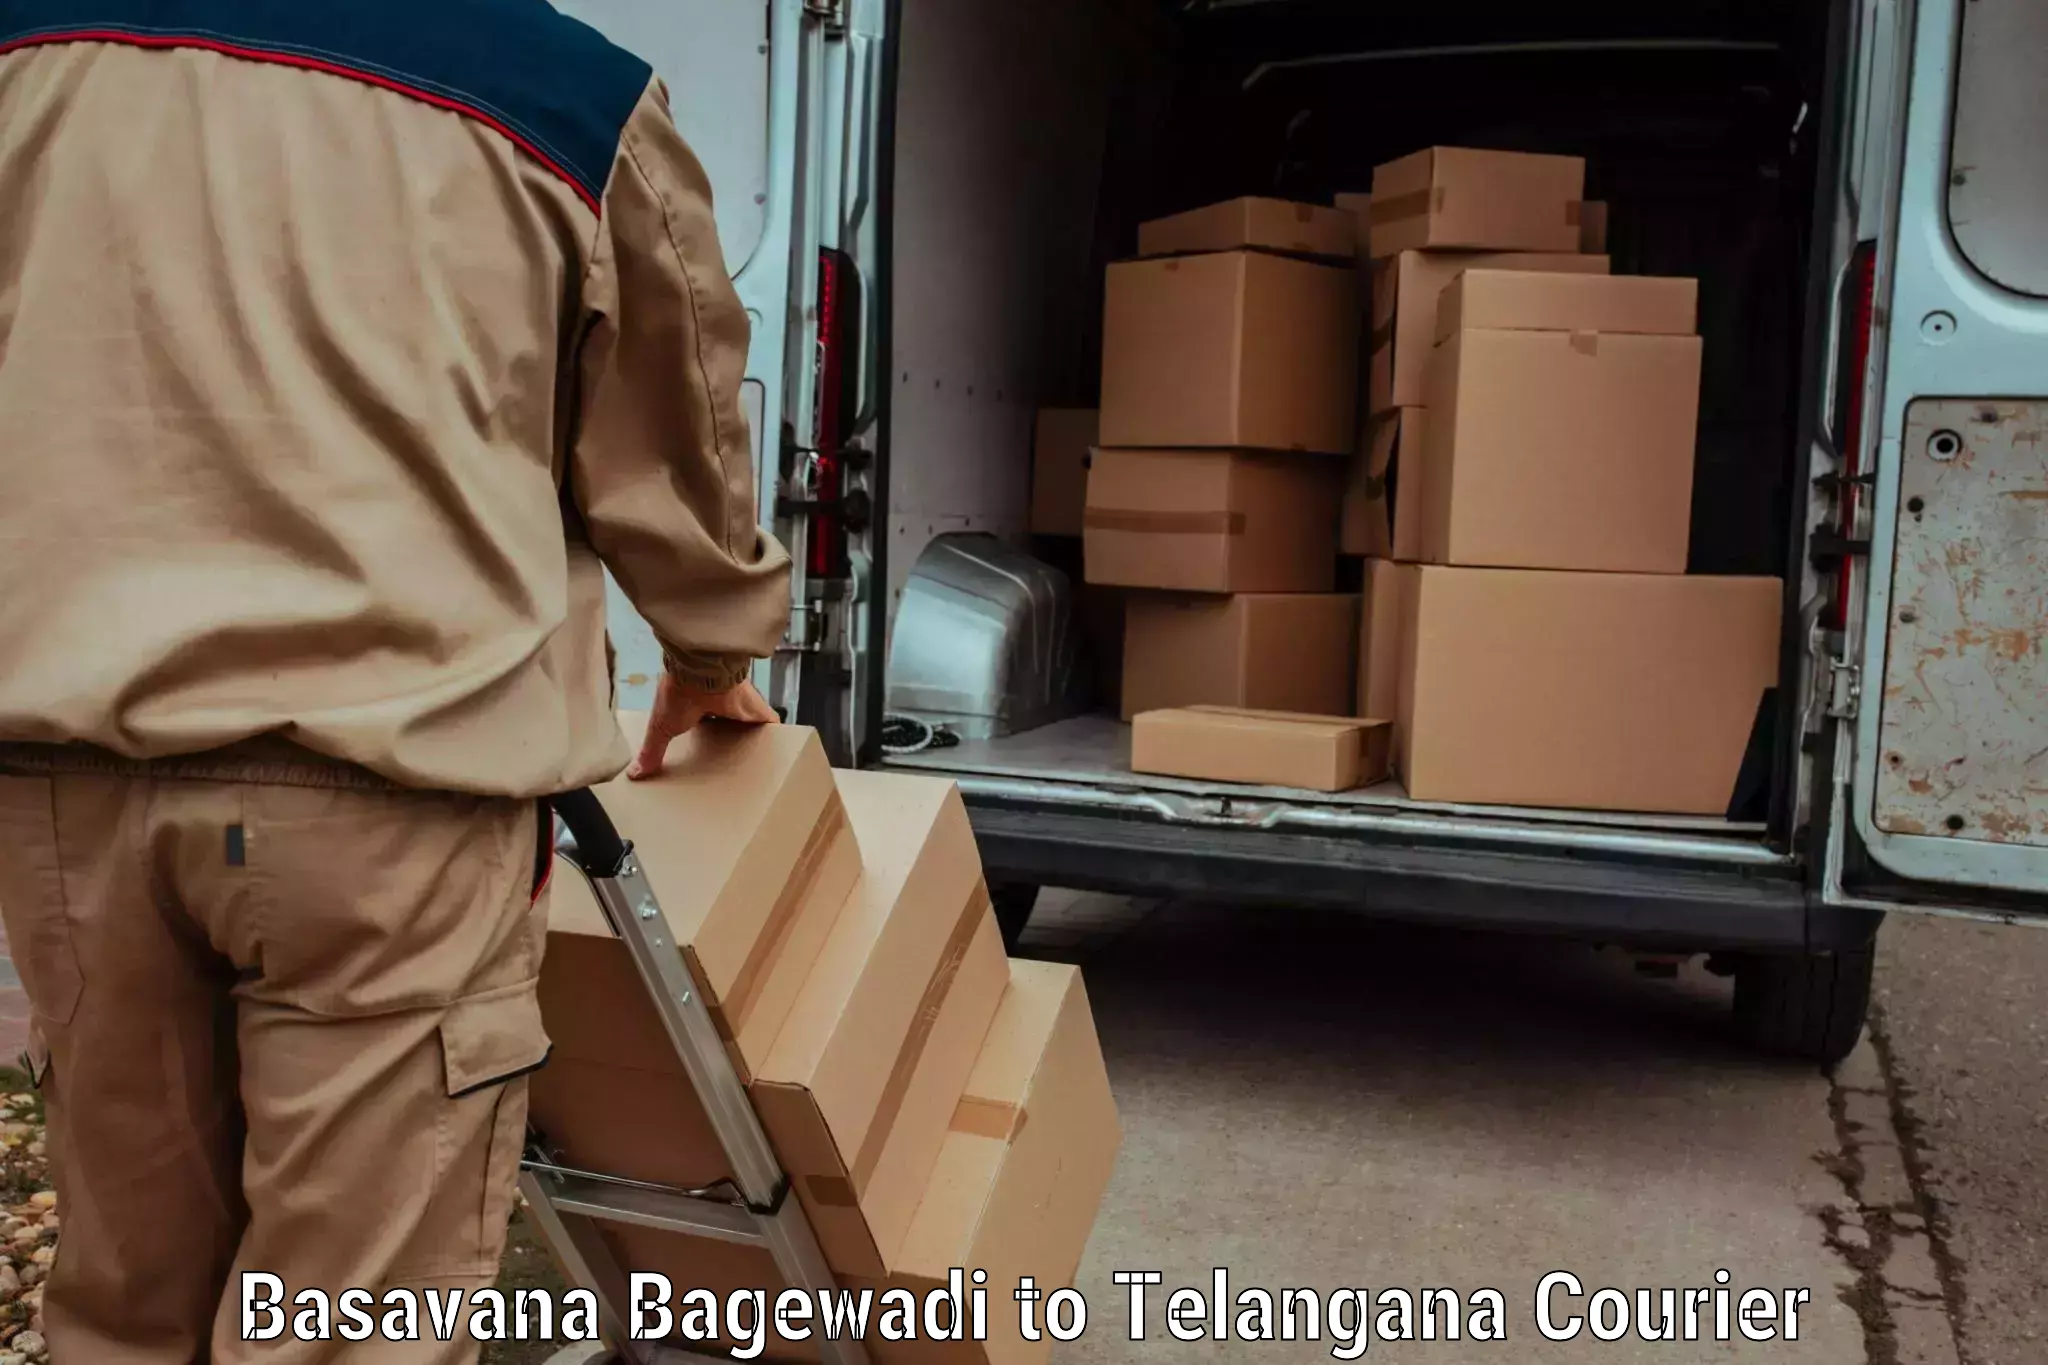 Individual parcel service Basavana Bagewadi to Mancherial